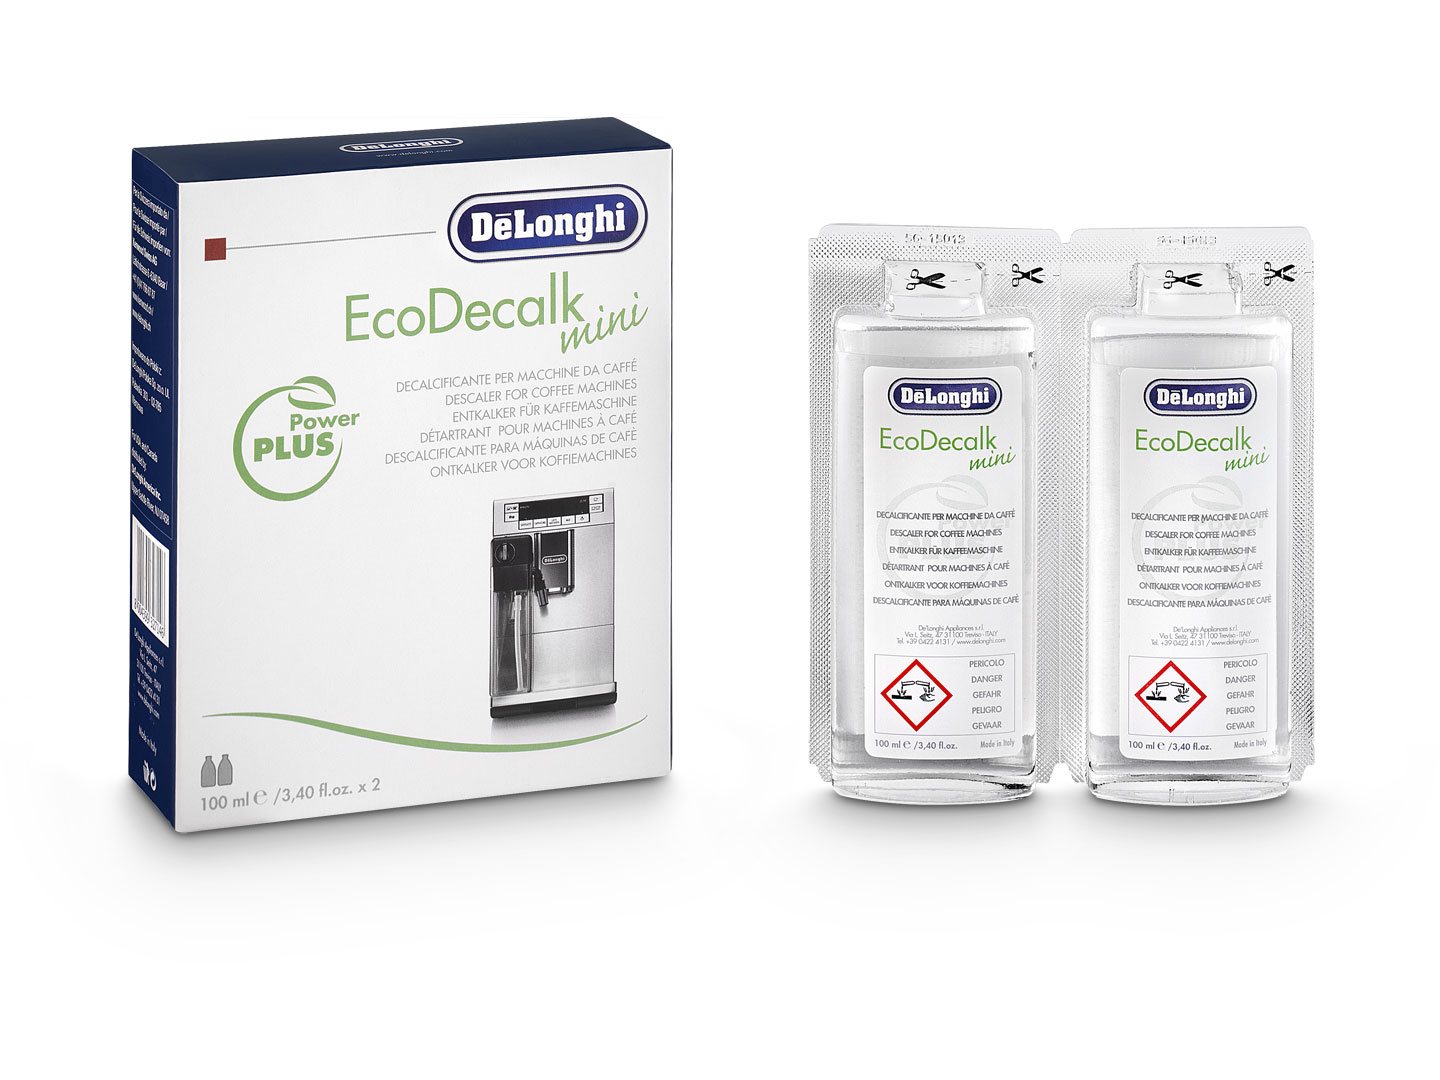 DeLonghi EcoDecalk mini 2x100ml piederumi kafijas automātiem